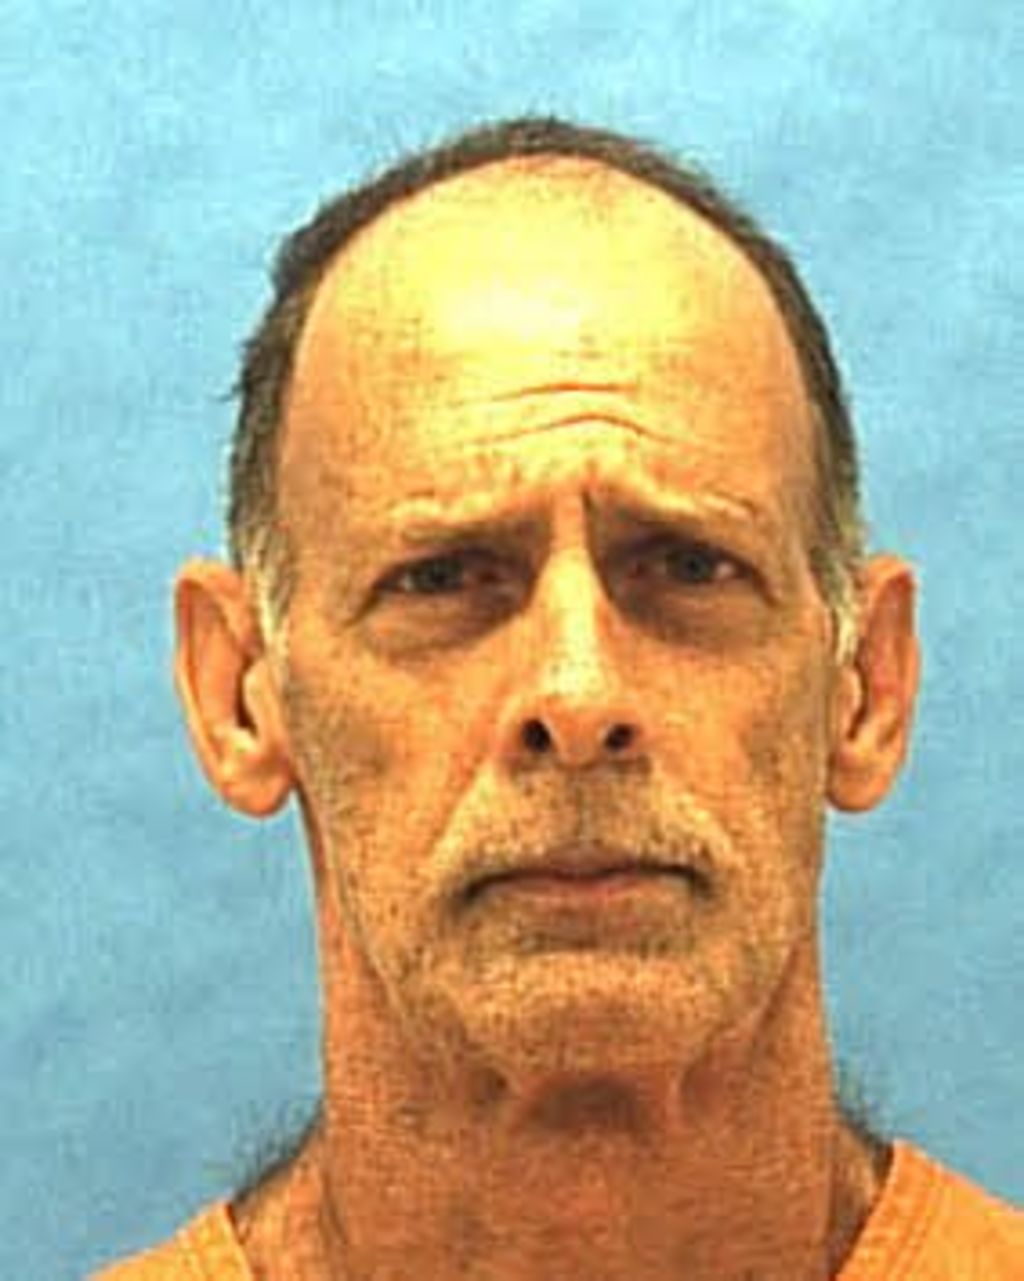 De cumplirse su ejecución en la prisión estatal de Starke, Correll sería el segundo reo al que se aplica la pena capital en Florida en 2015, después de Johny Shane Kormody, condenado a morir por el homicidio de un banquero en 1993.